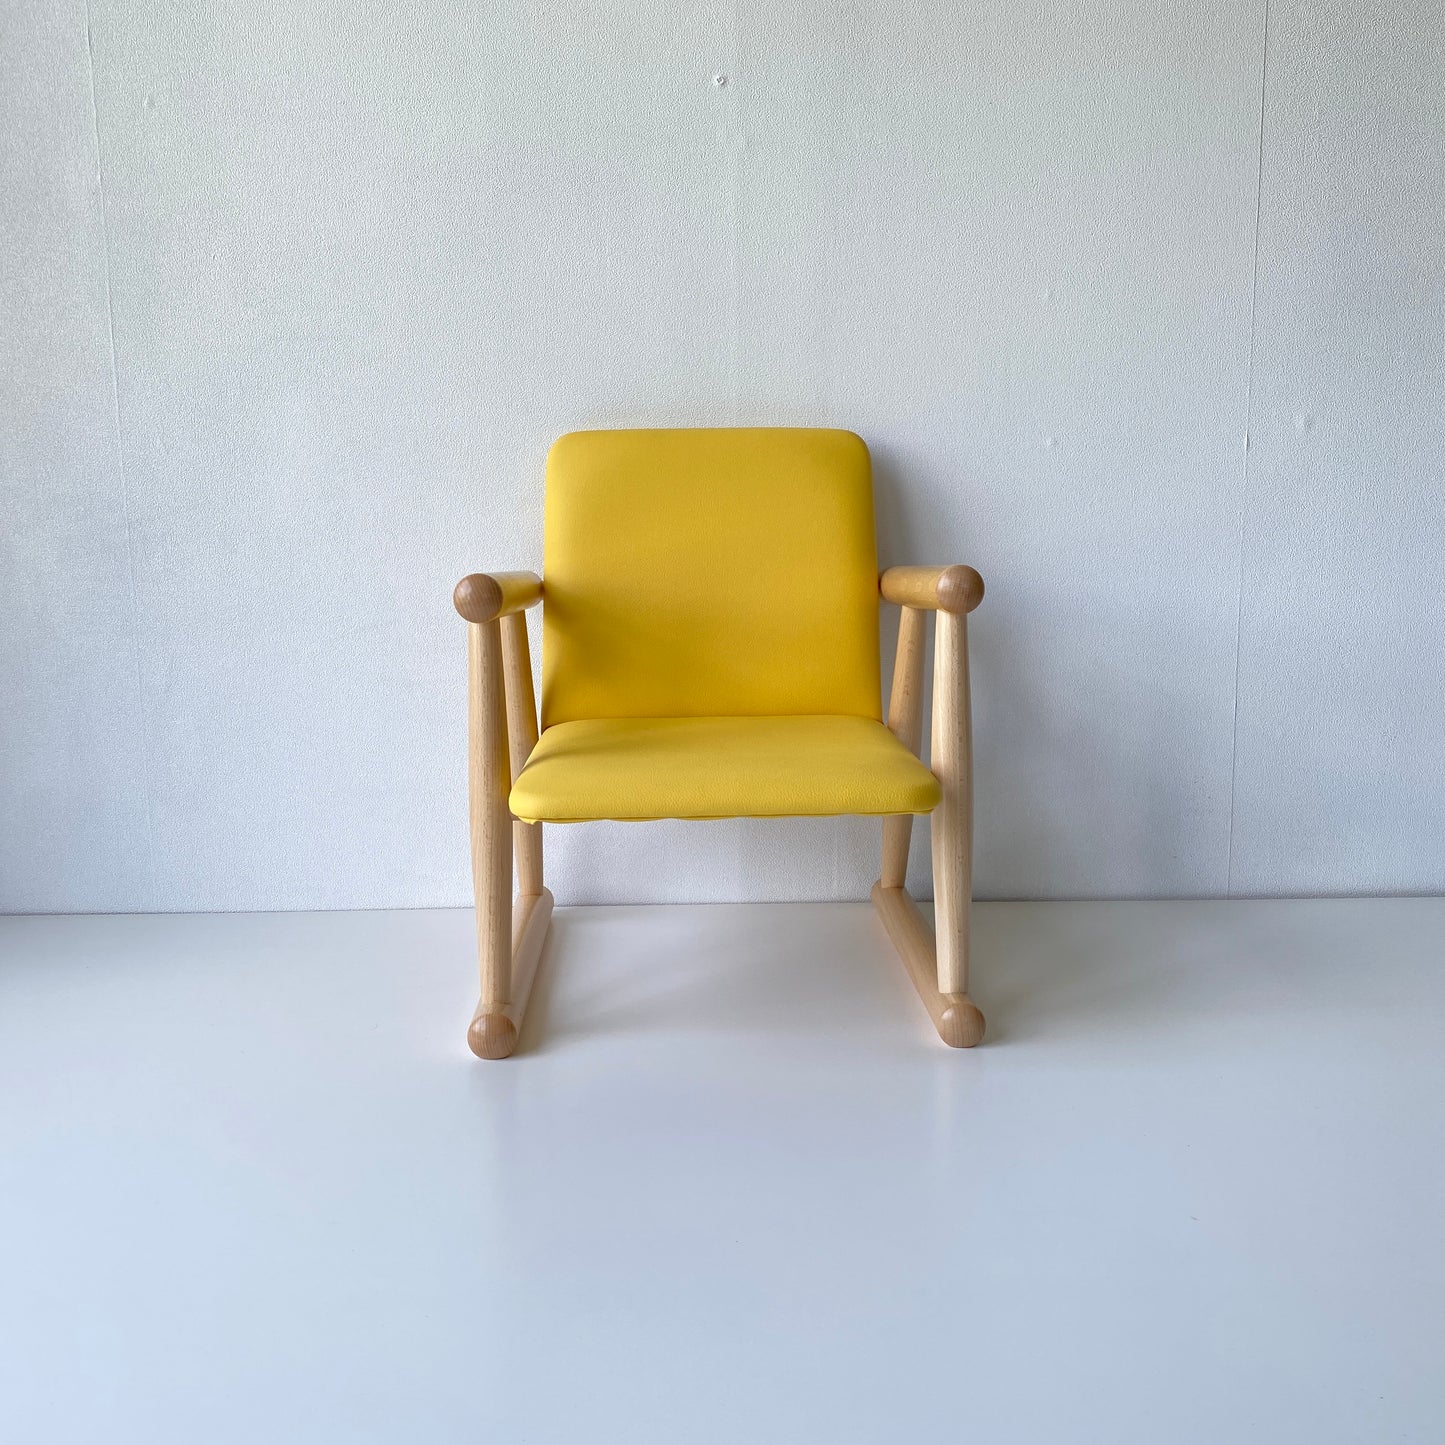 秋田木工 キッズチェア 子供椅子 NO.100R ブナ材 ナチュラル色 黄色 イエロー 合成皮革 曲木家具